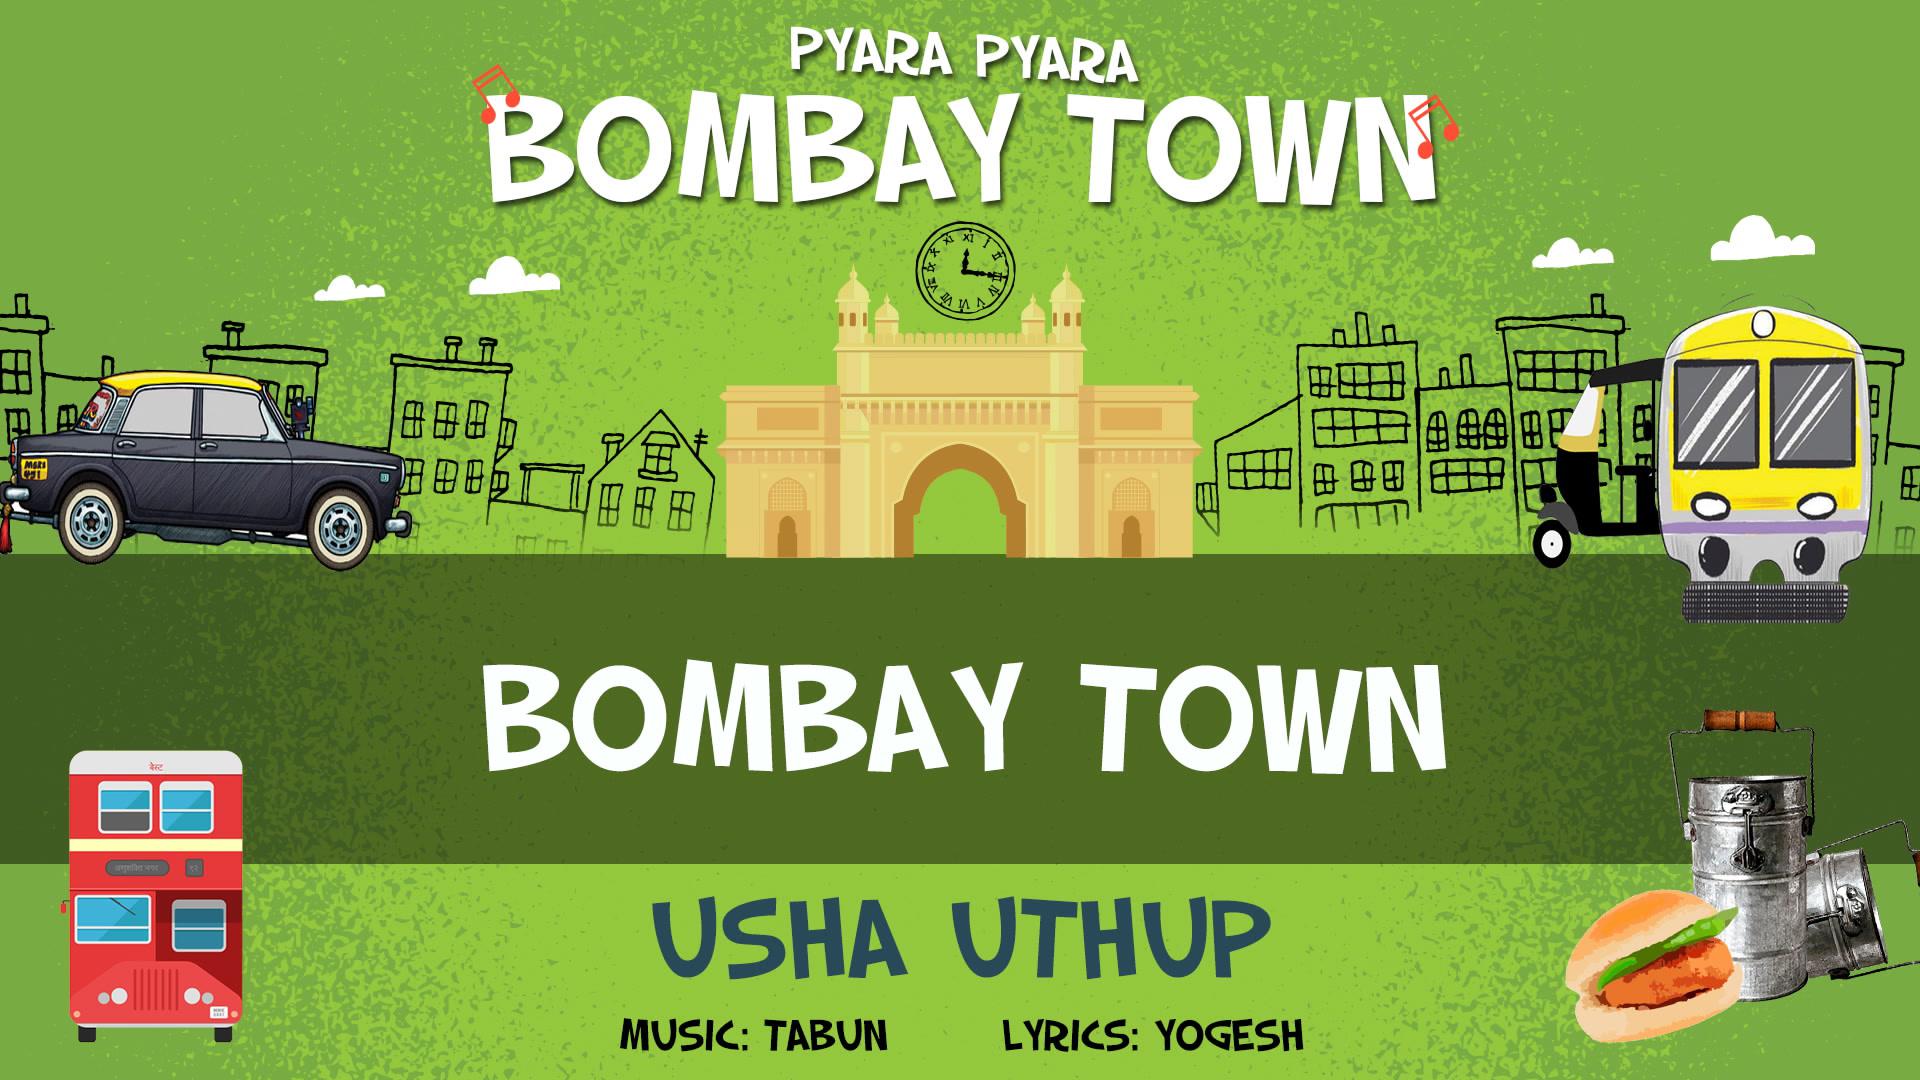 Usha Uthup - Bombay Town (Pseudo Video)